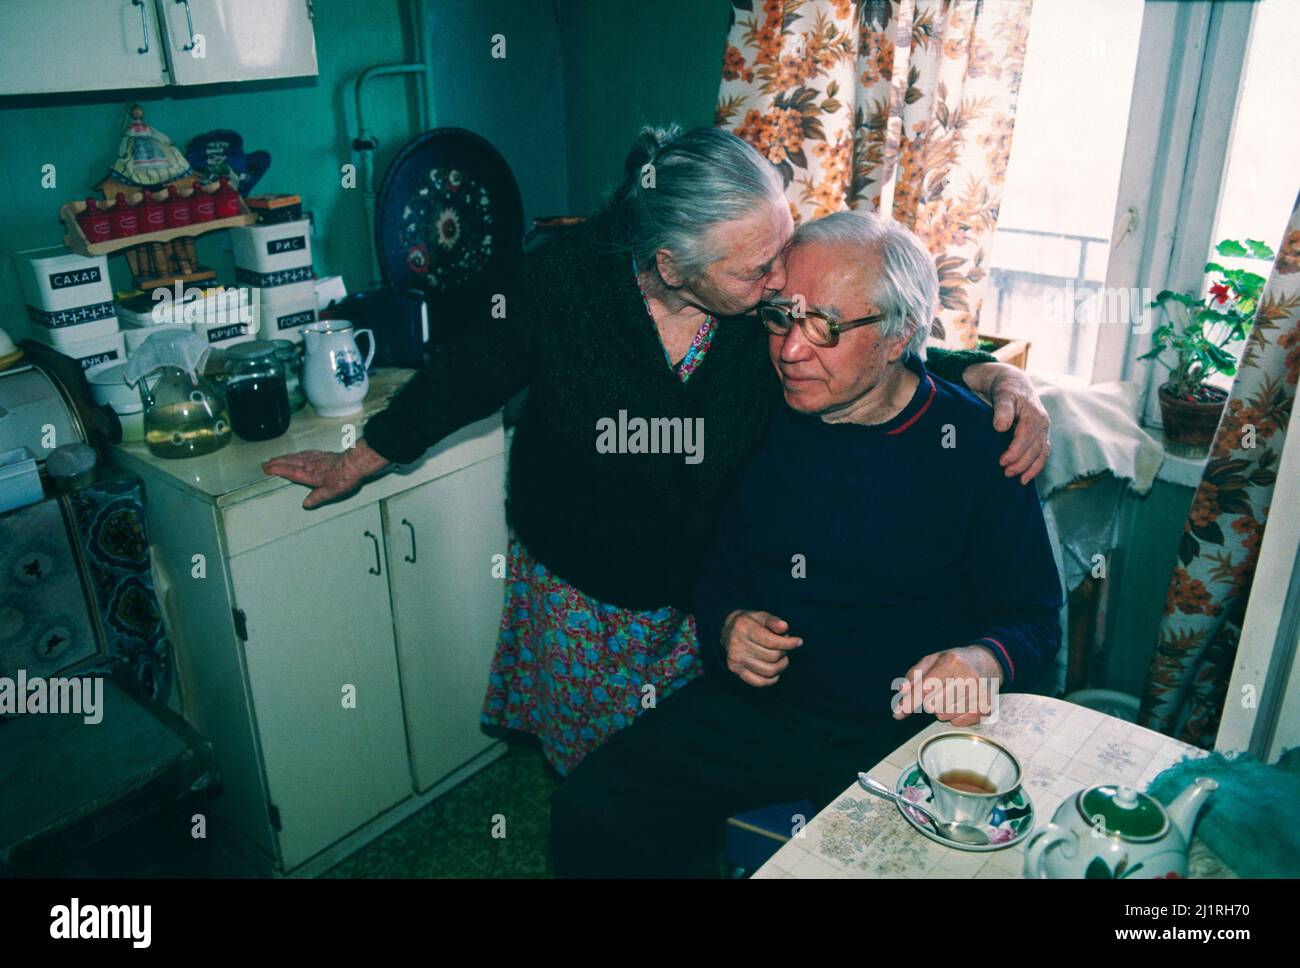 Una pareja rusa de cada 90 años que vive con una pensión de 200 rublos al mes en su cocina de Moscú a finales de 1991. Foto de stock